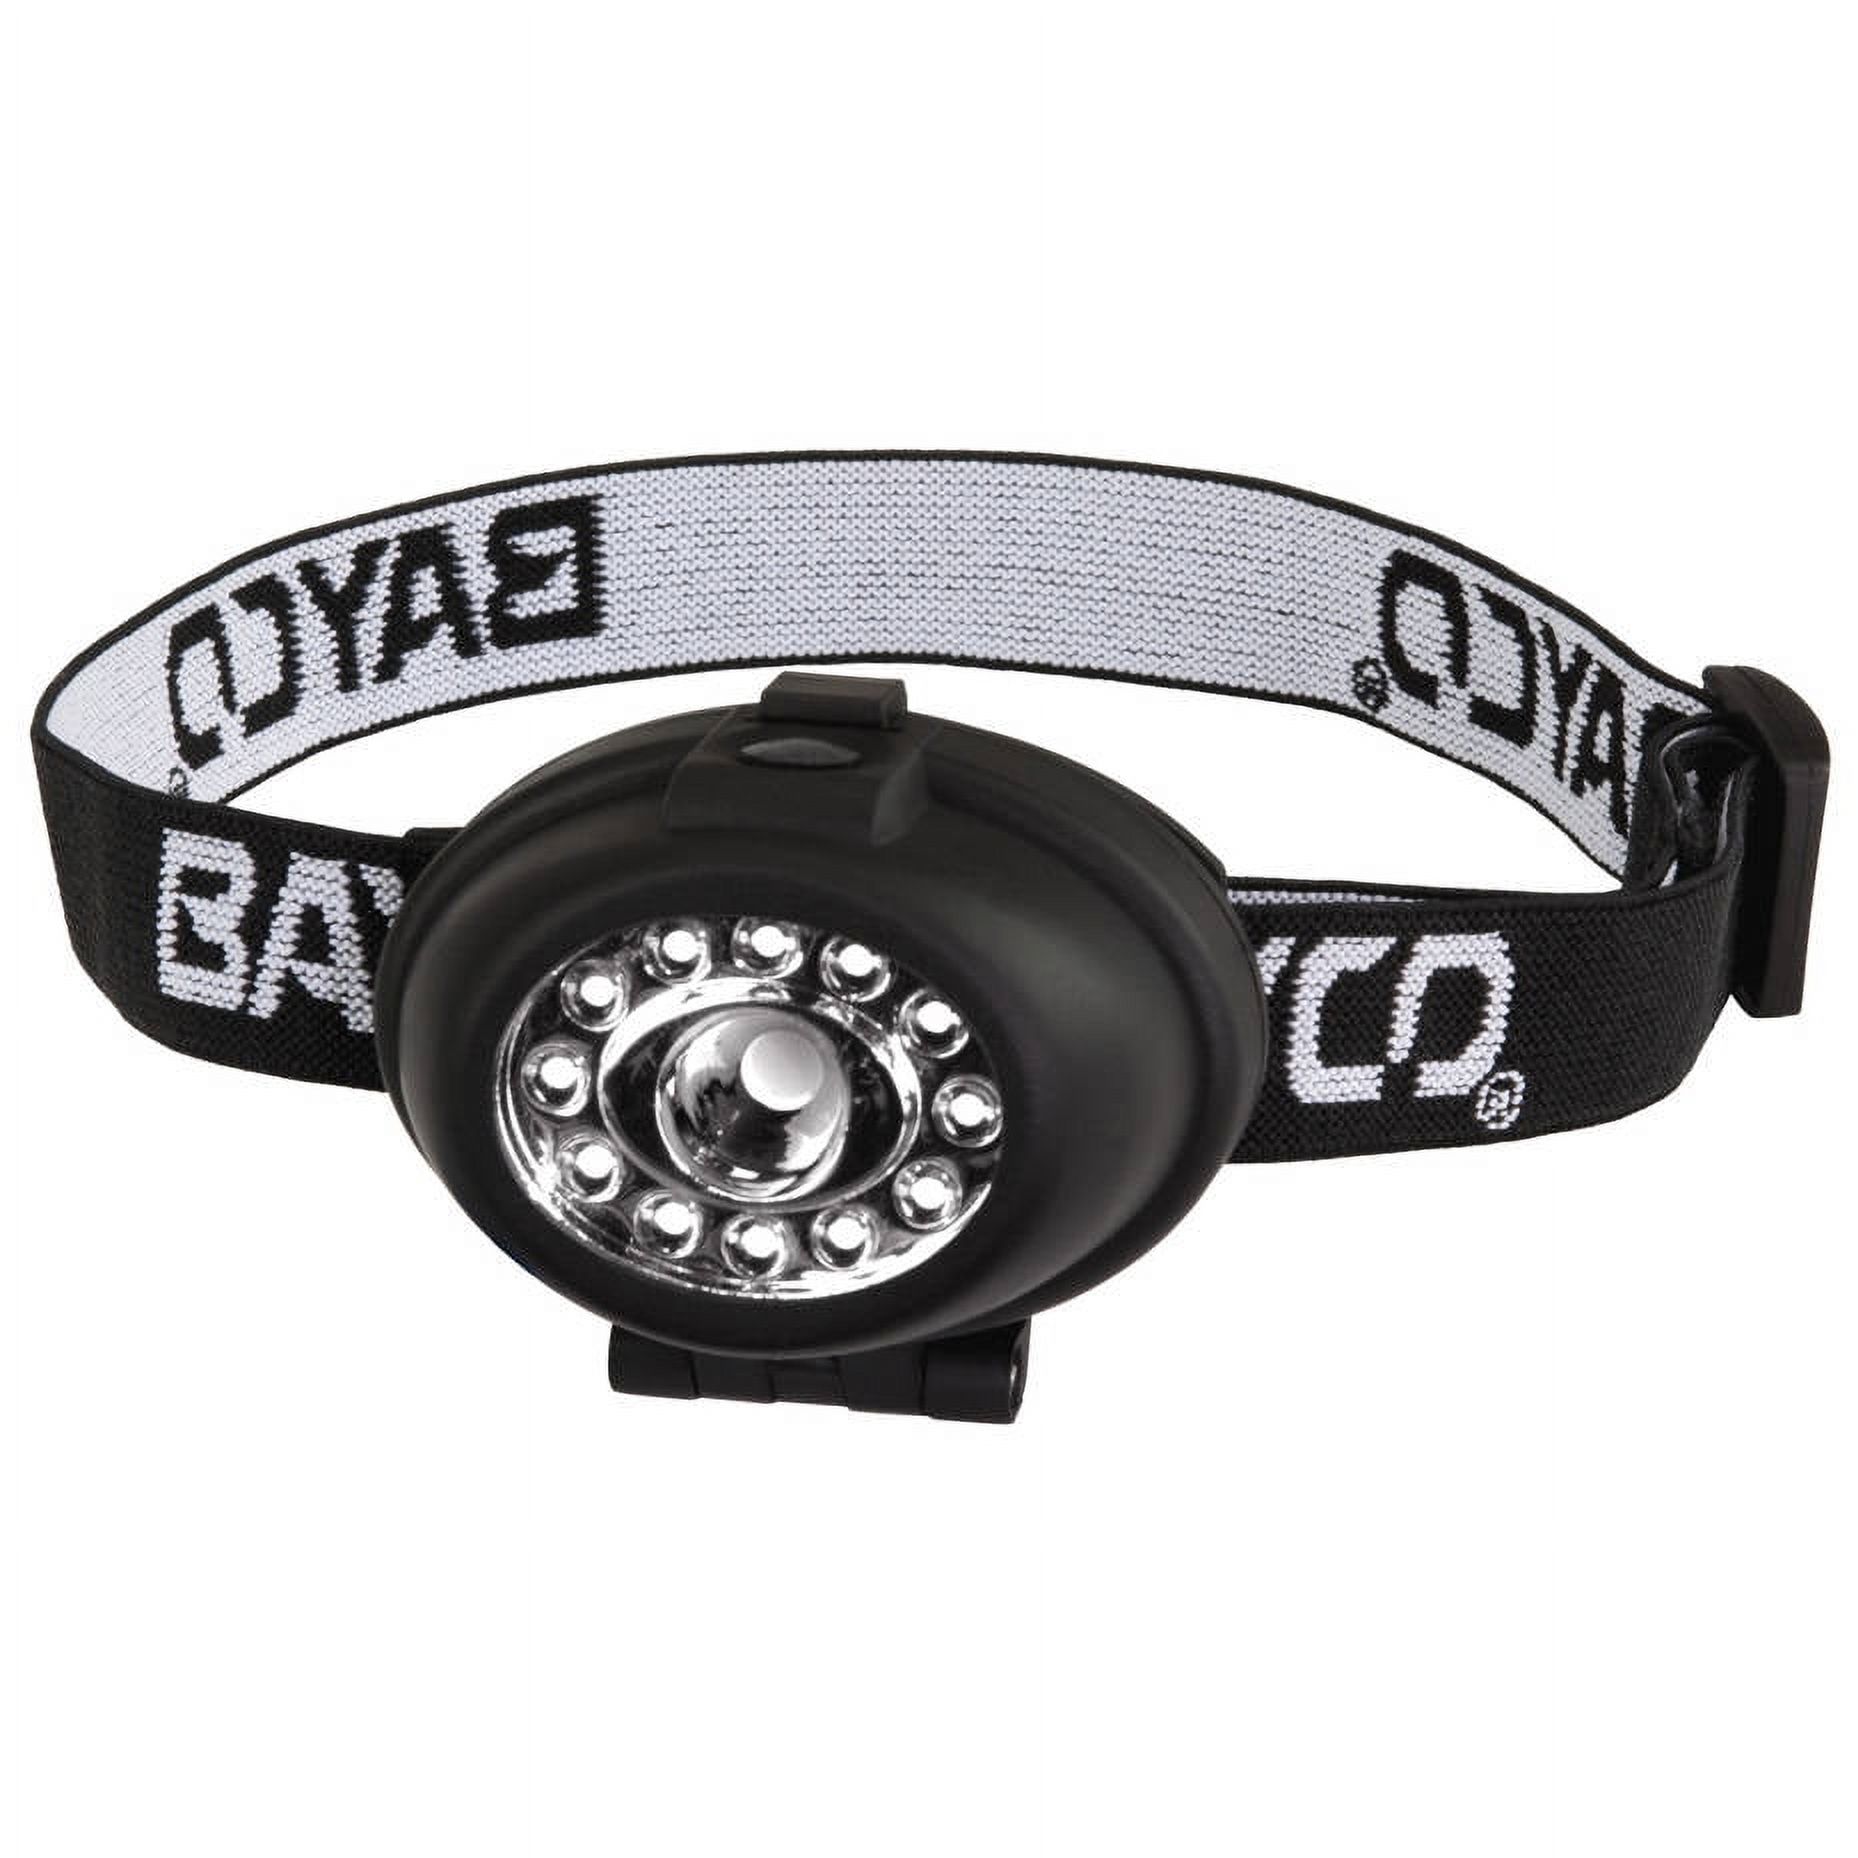 Bayco NSP-2212 Night Stick 13 LED Headlamp, Black - image 2 of 2